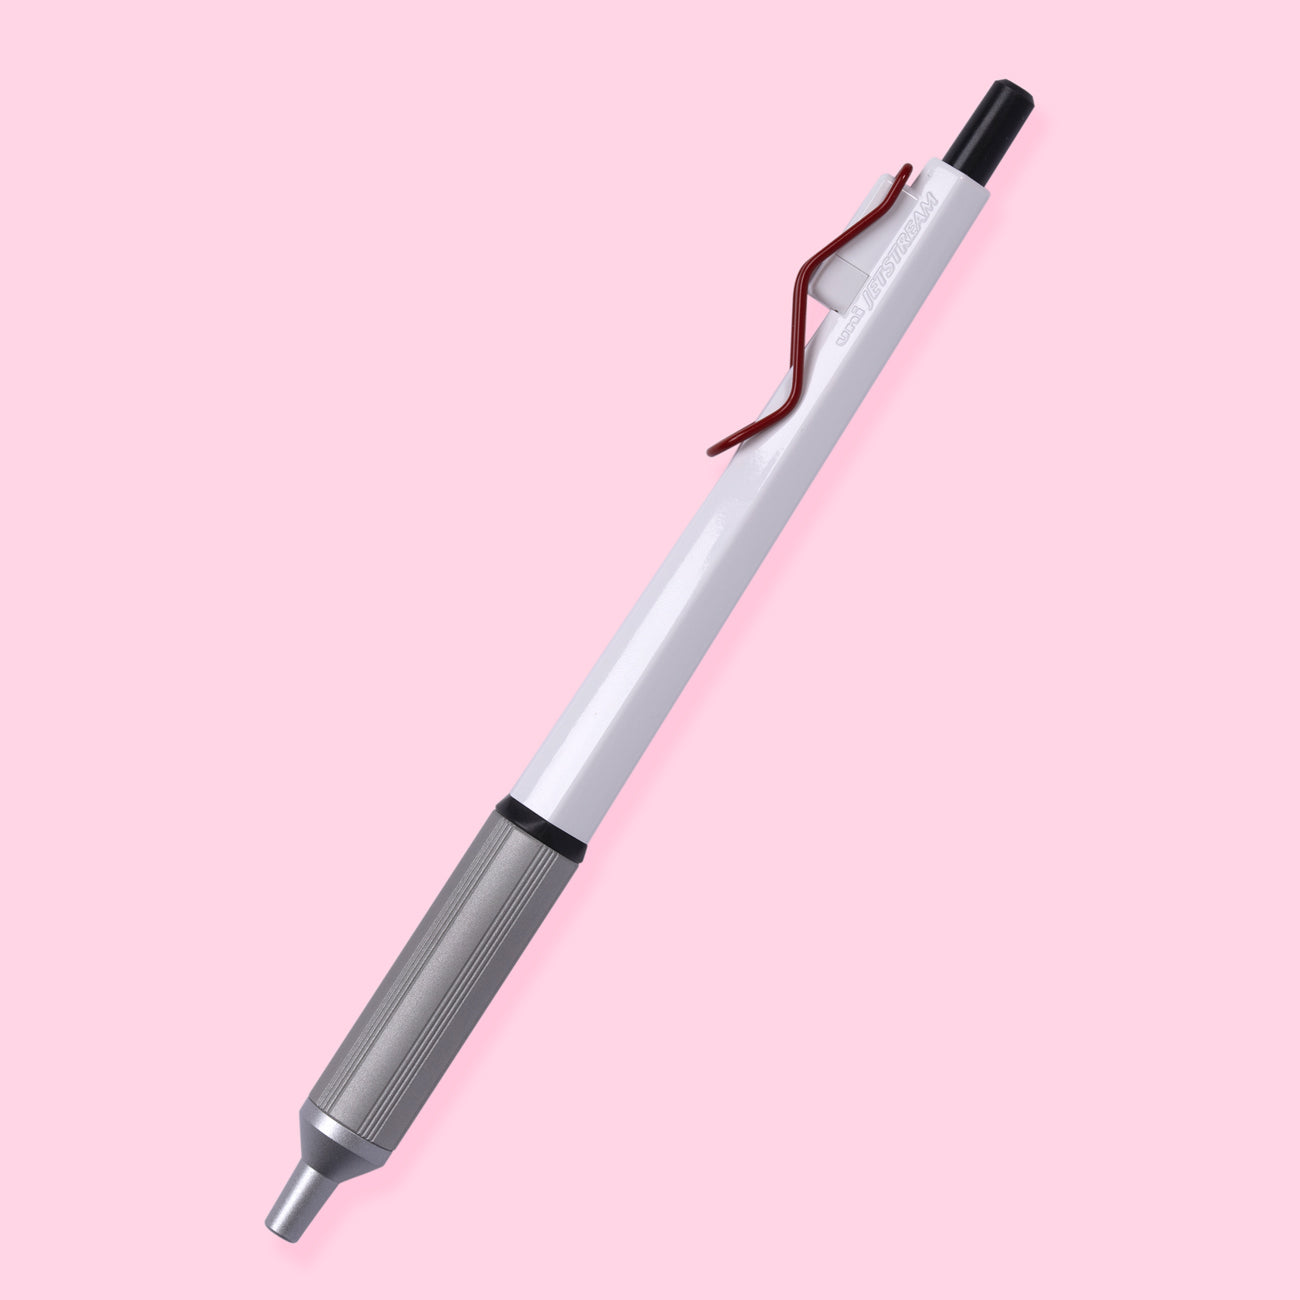 Uni Jetstream Edge Ballpoint Pen - 0.28 mm - White Red Body